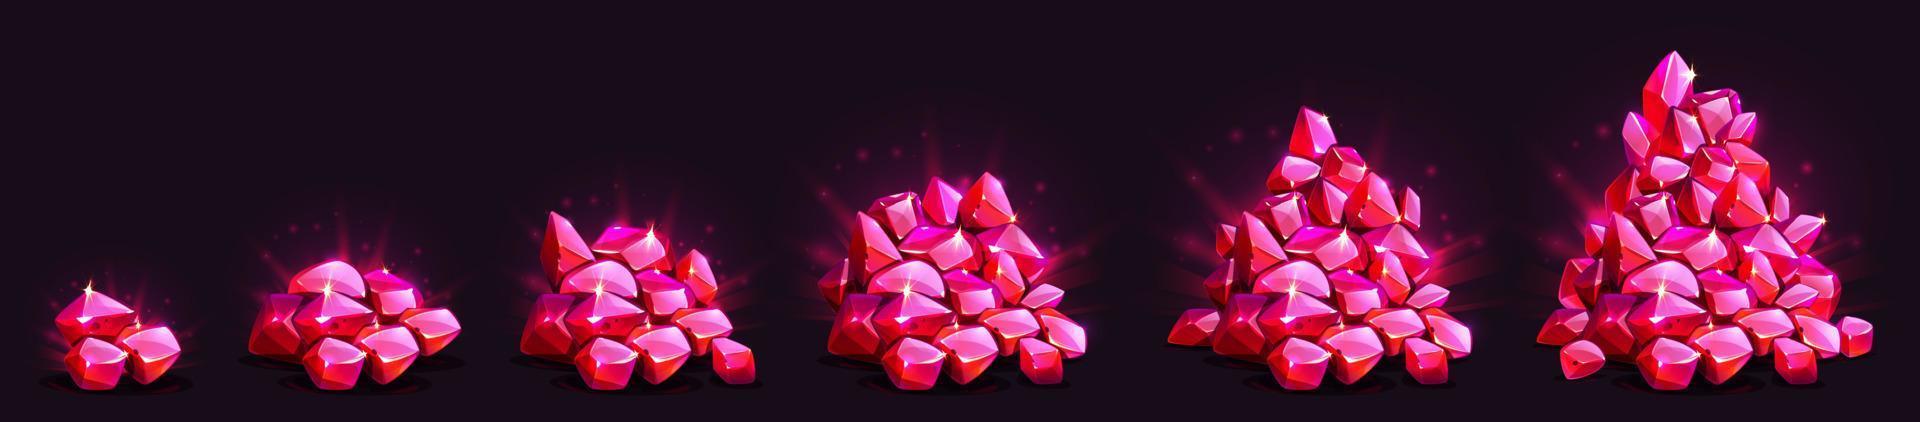 pilha crescente de cristais de gemas, jogo de pedras preciosas de brilho vermelho vetor